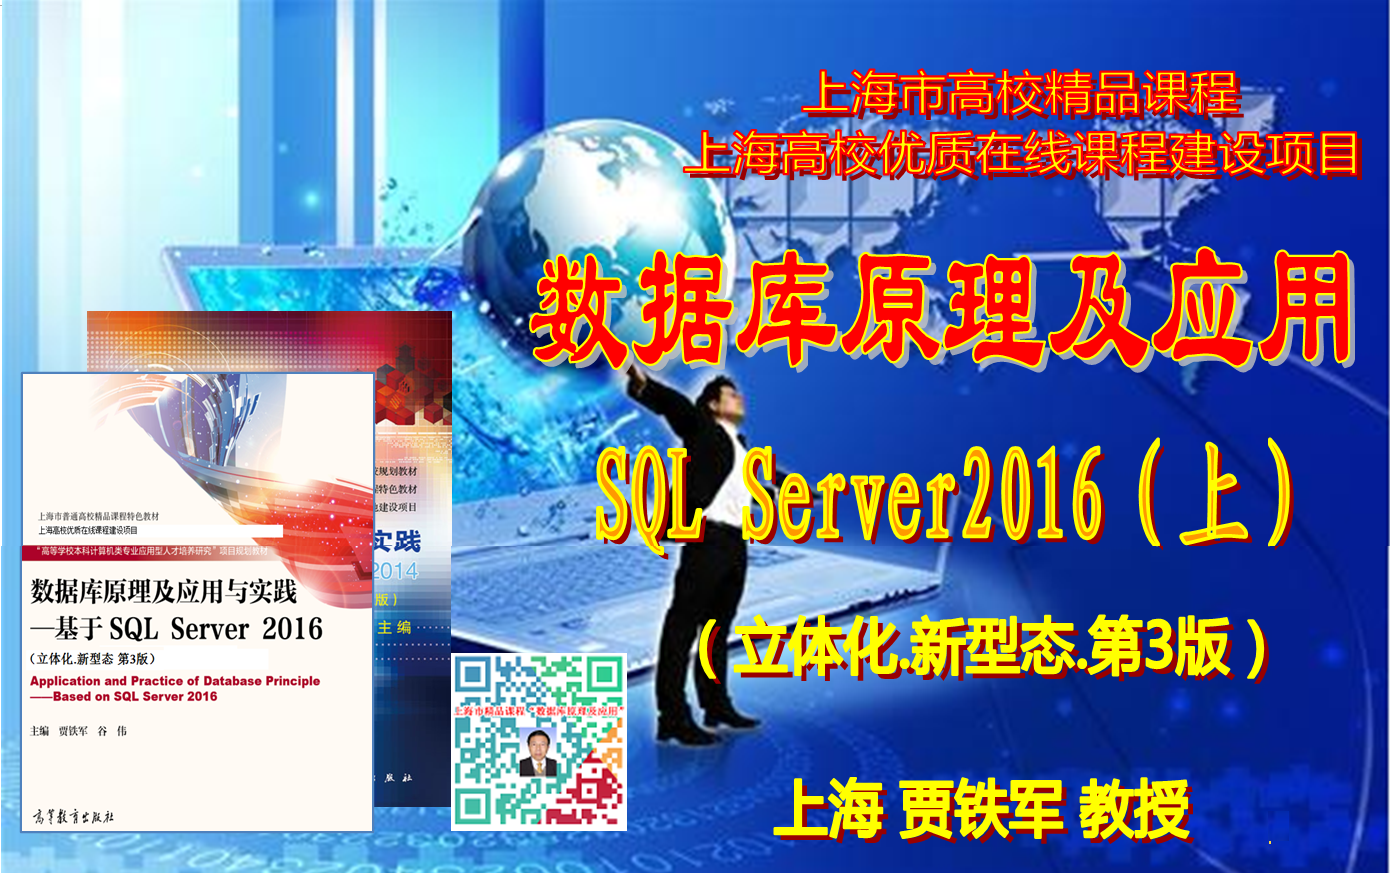 数据库原理及应用(SQL Server 2016数据处理)(上)【上海精品课程】